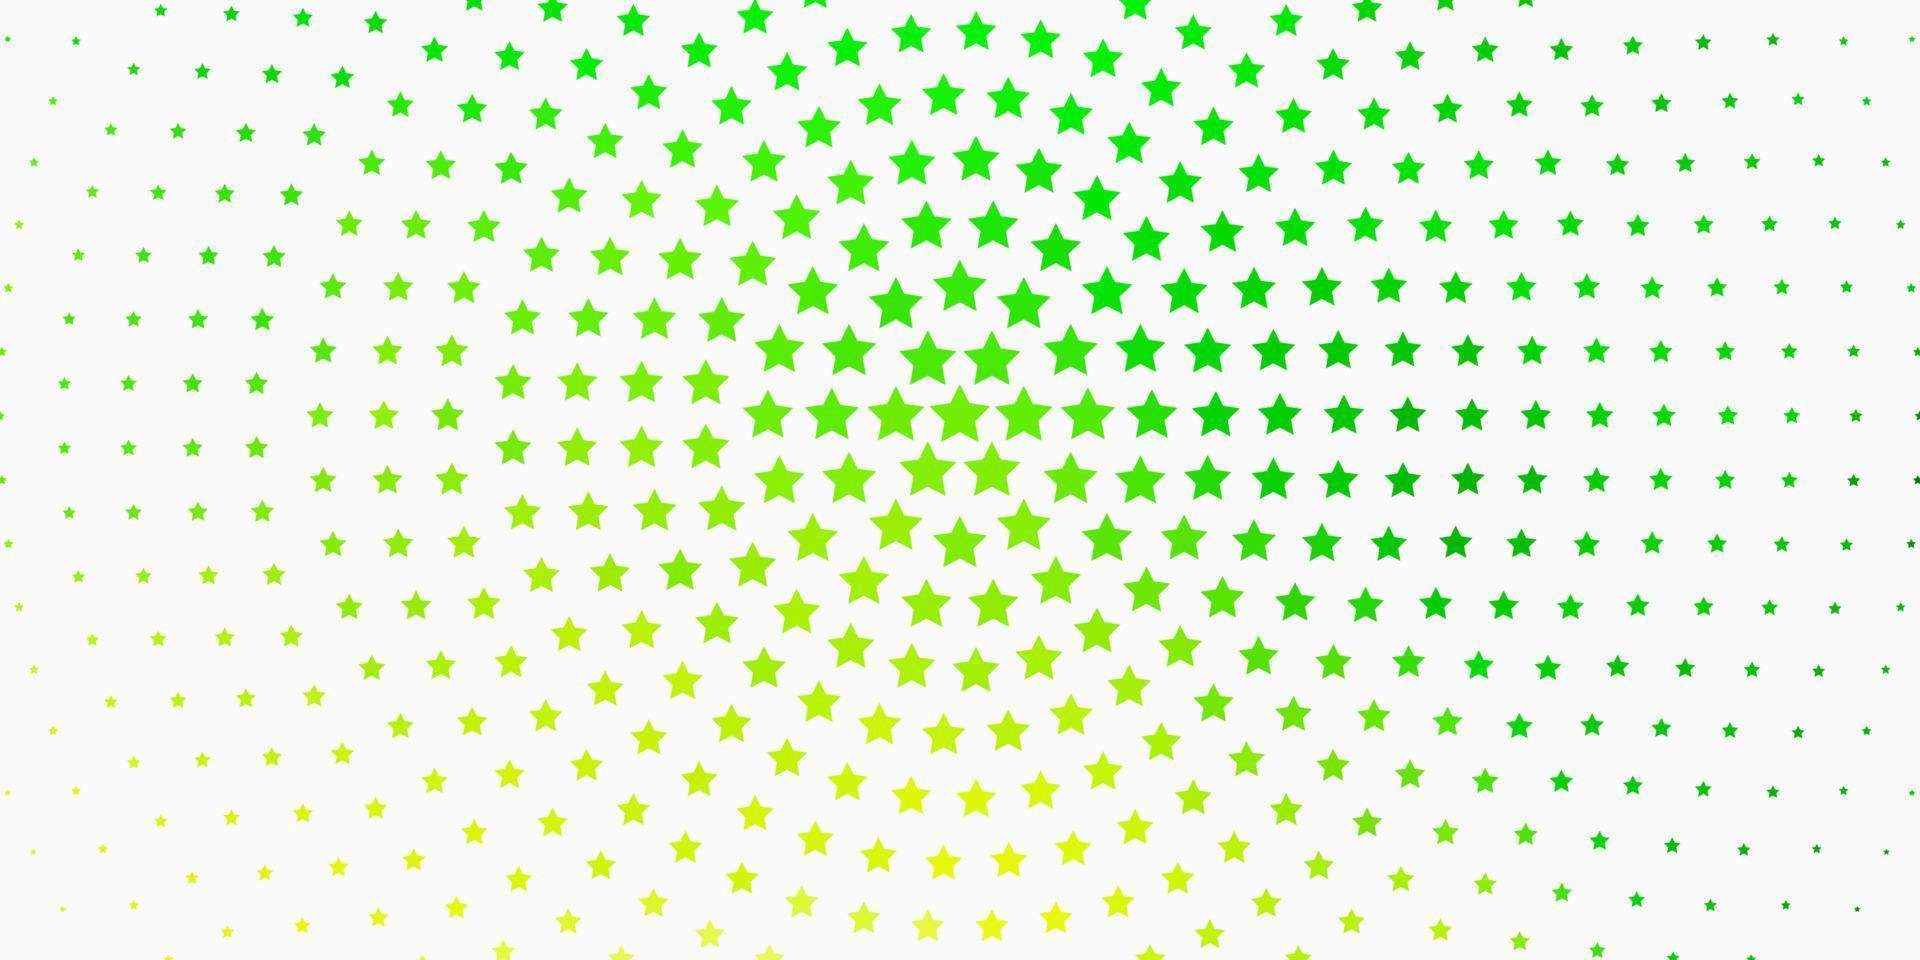 fond de vecteur vert clair avec des étoiles colorées.